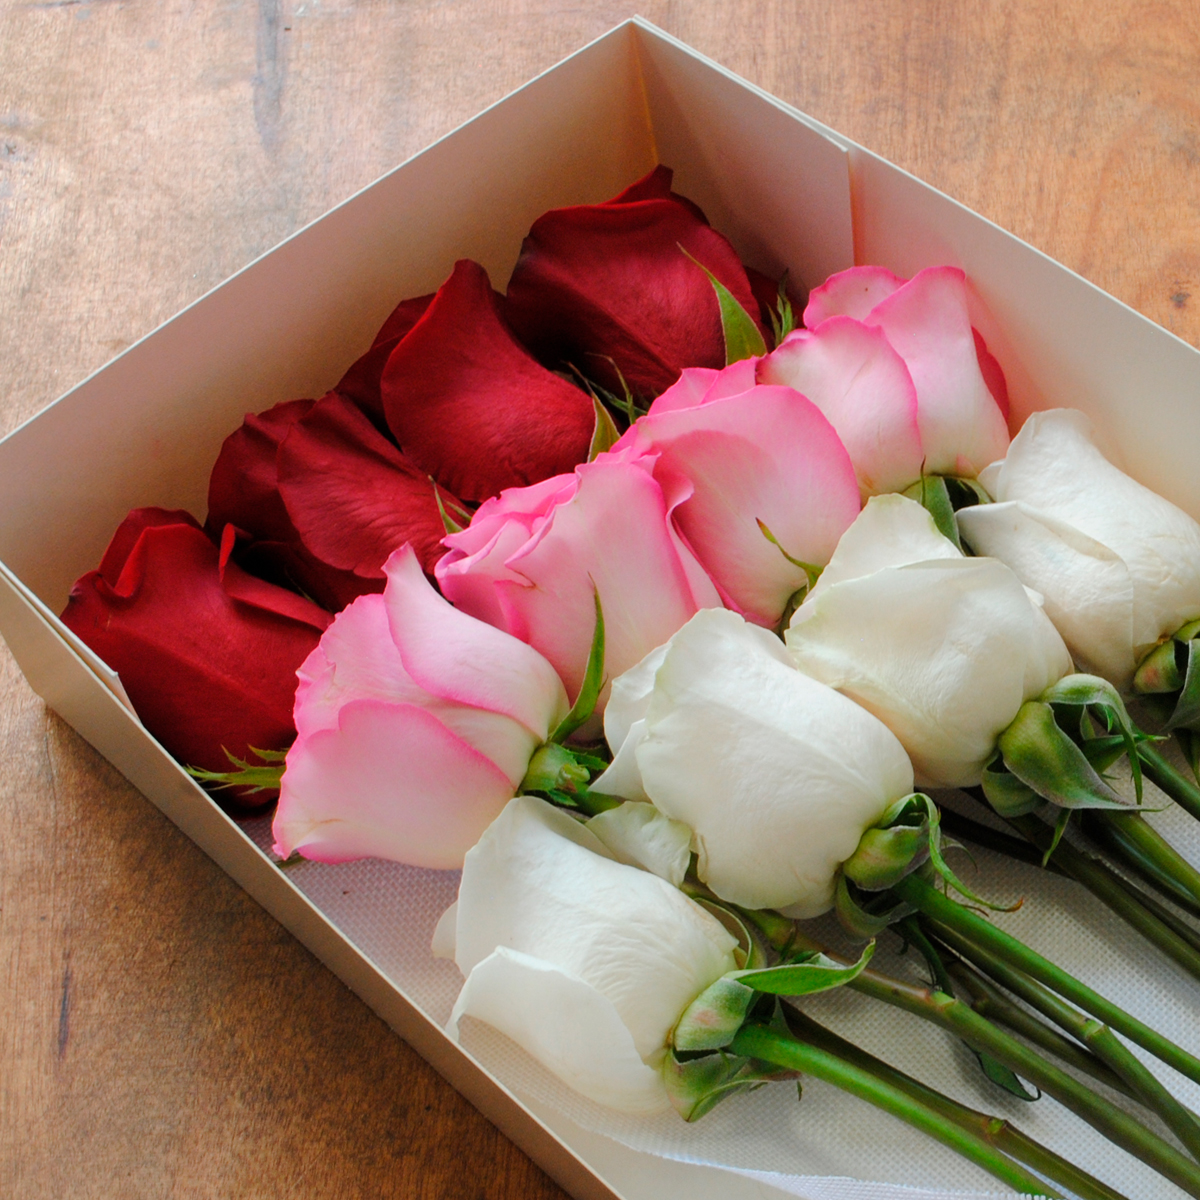 Cajas de Rosas preservadas - Dilo con una flor